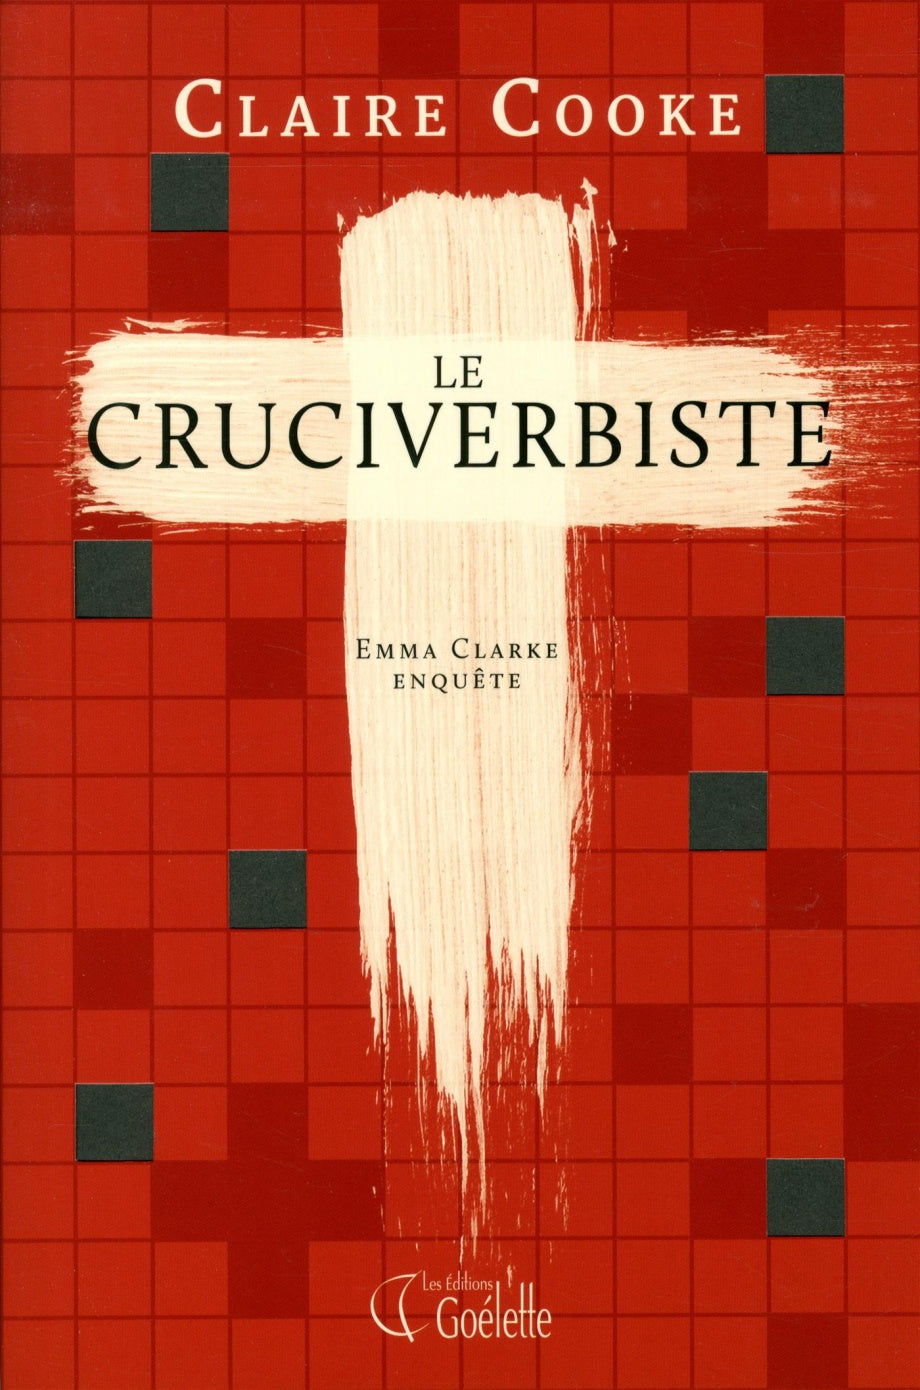 Le cruciverbiste: Emma Clarke enquête - Claire Cooke